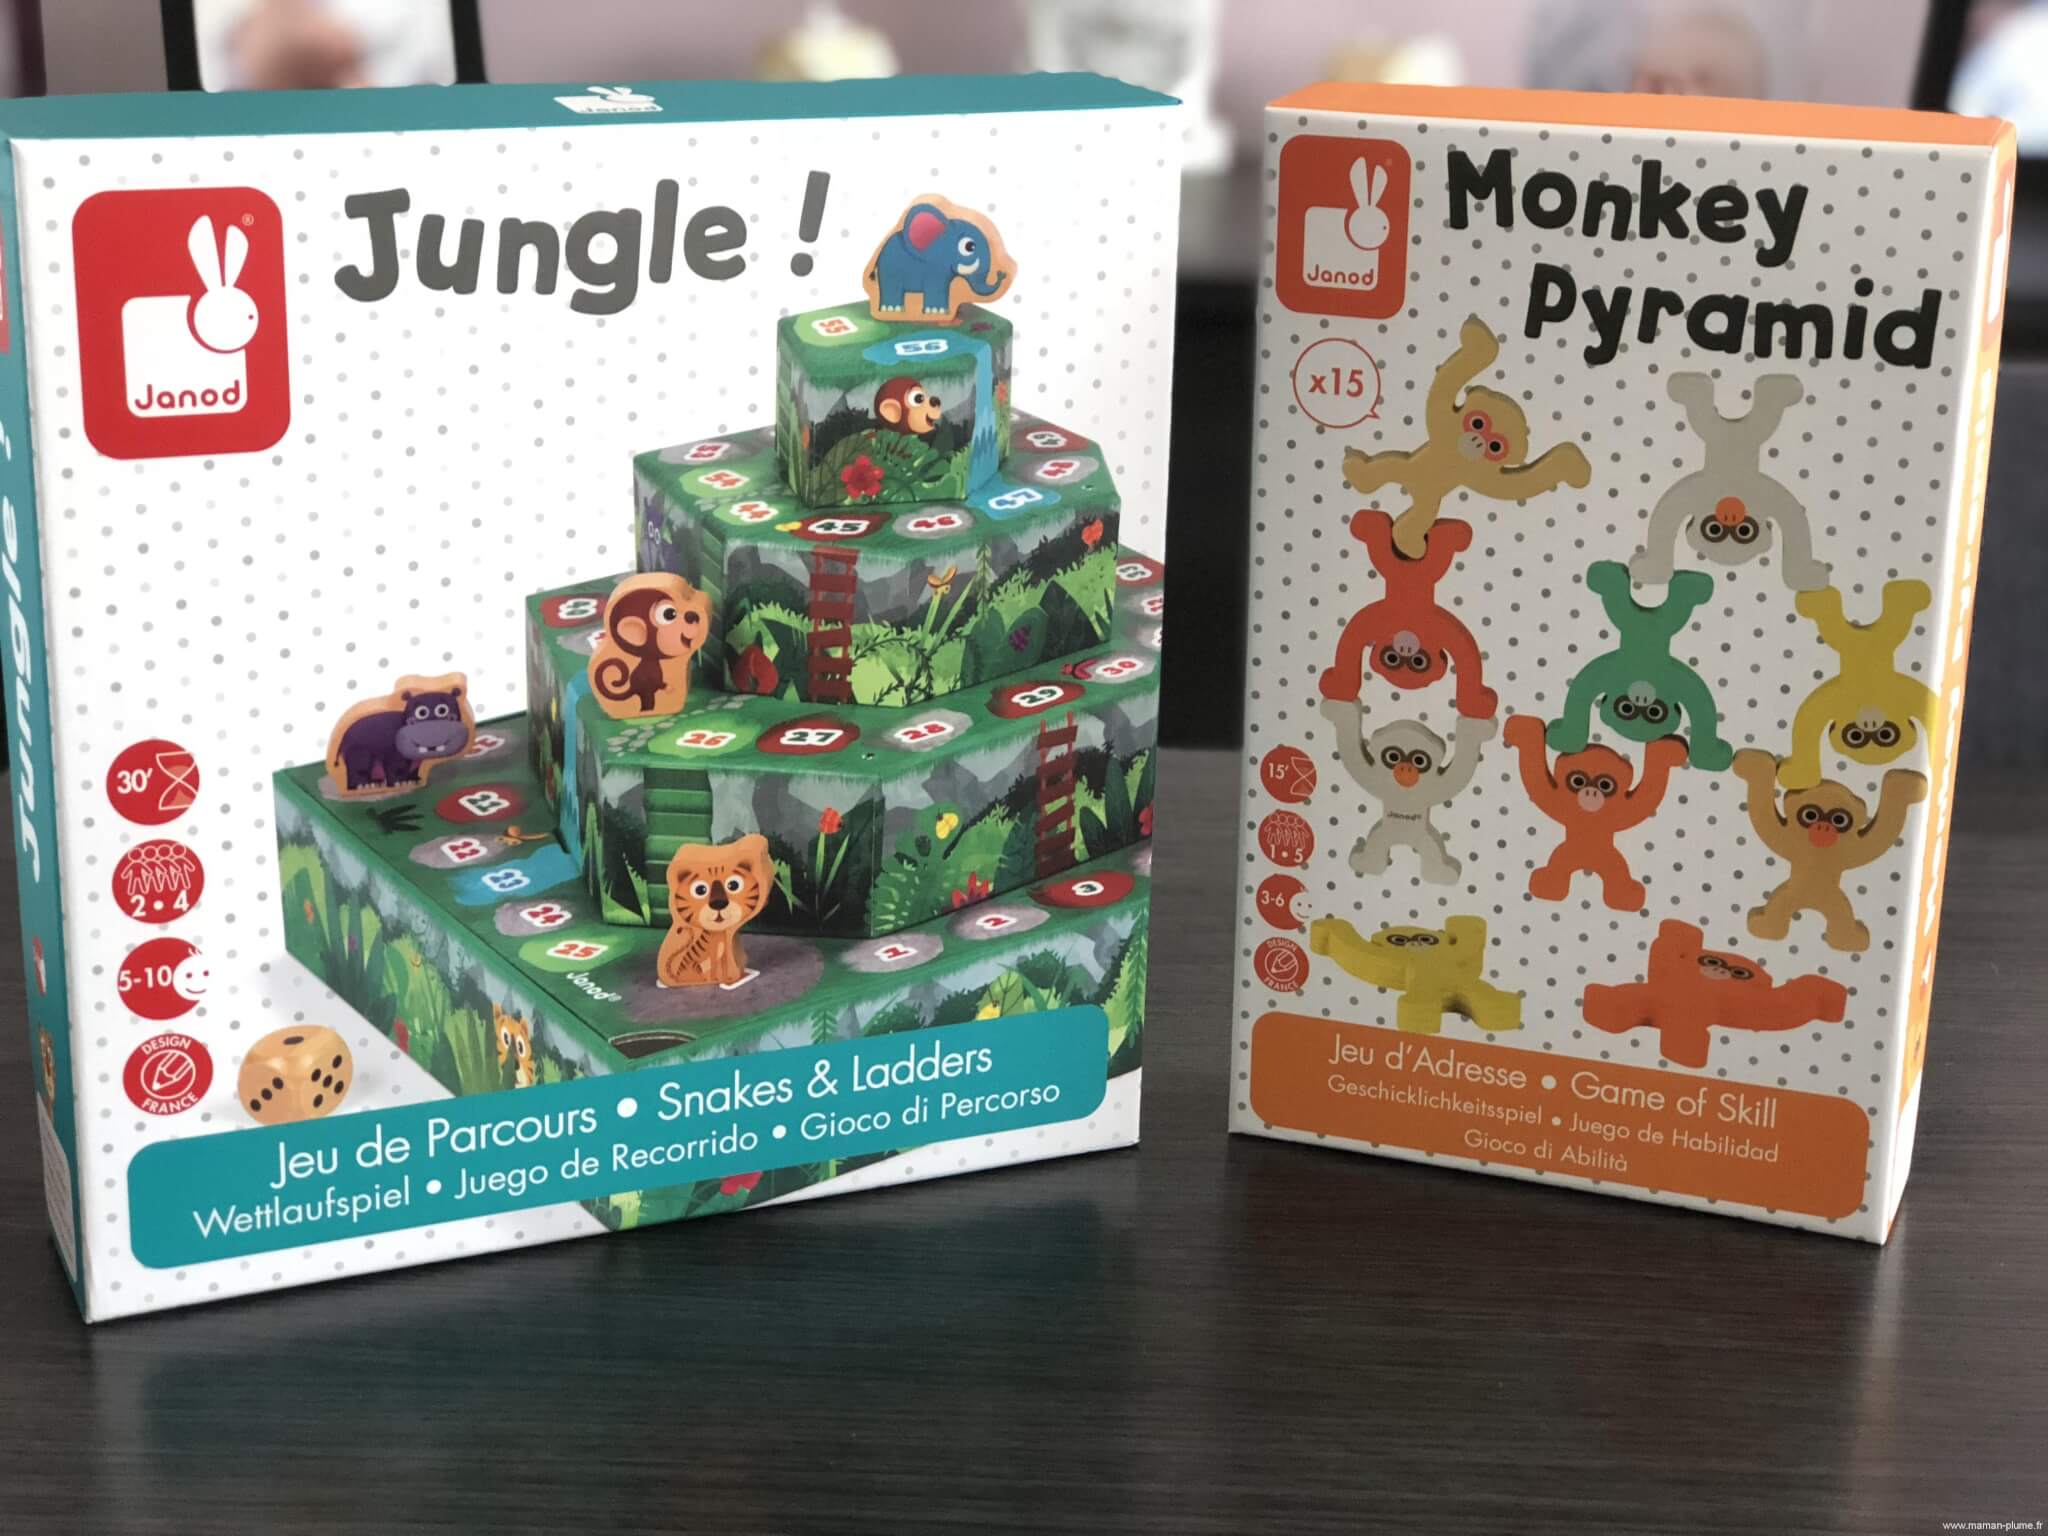 Compre o jogo de empilhamento Janod Monkey Pyramid online agora